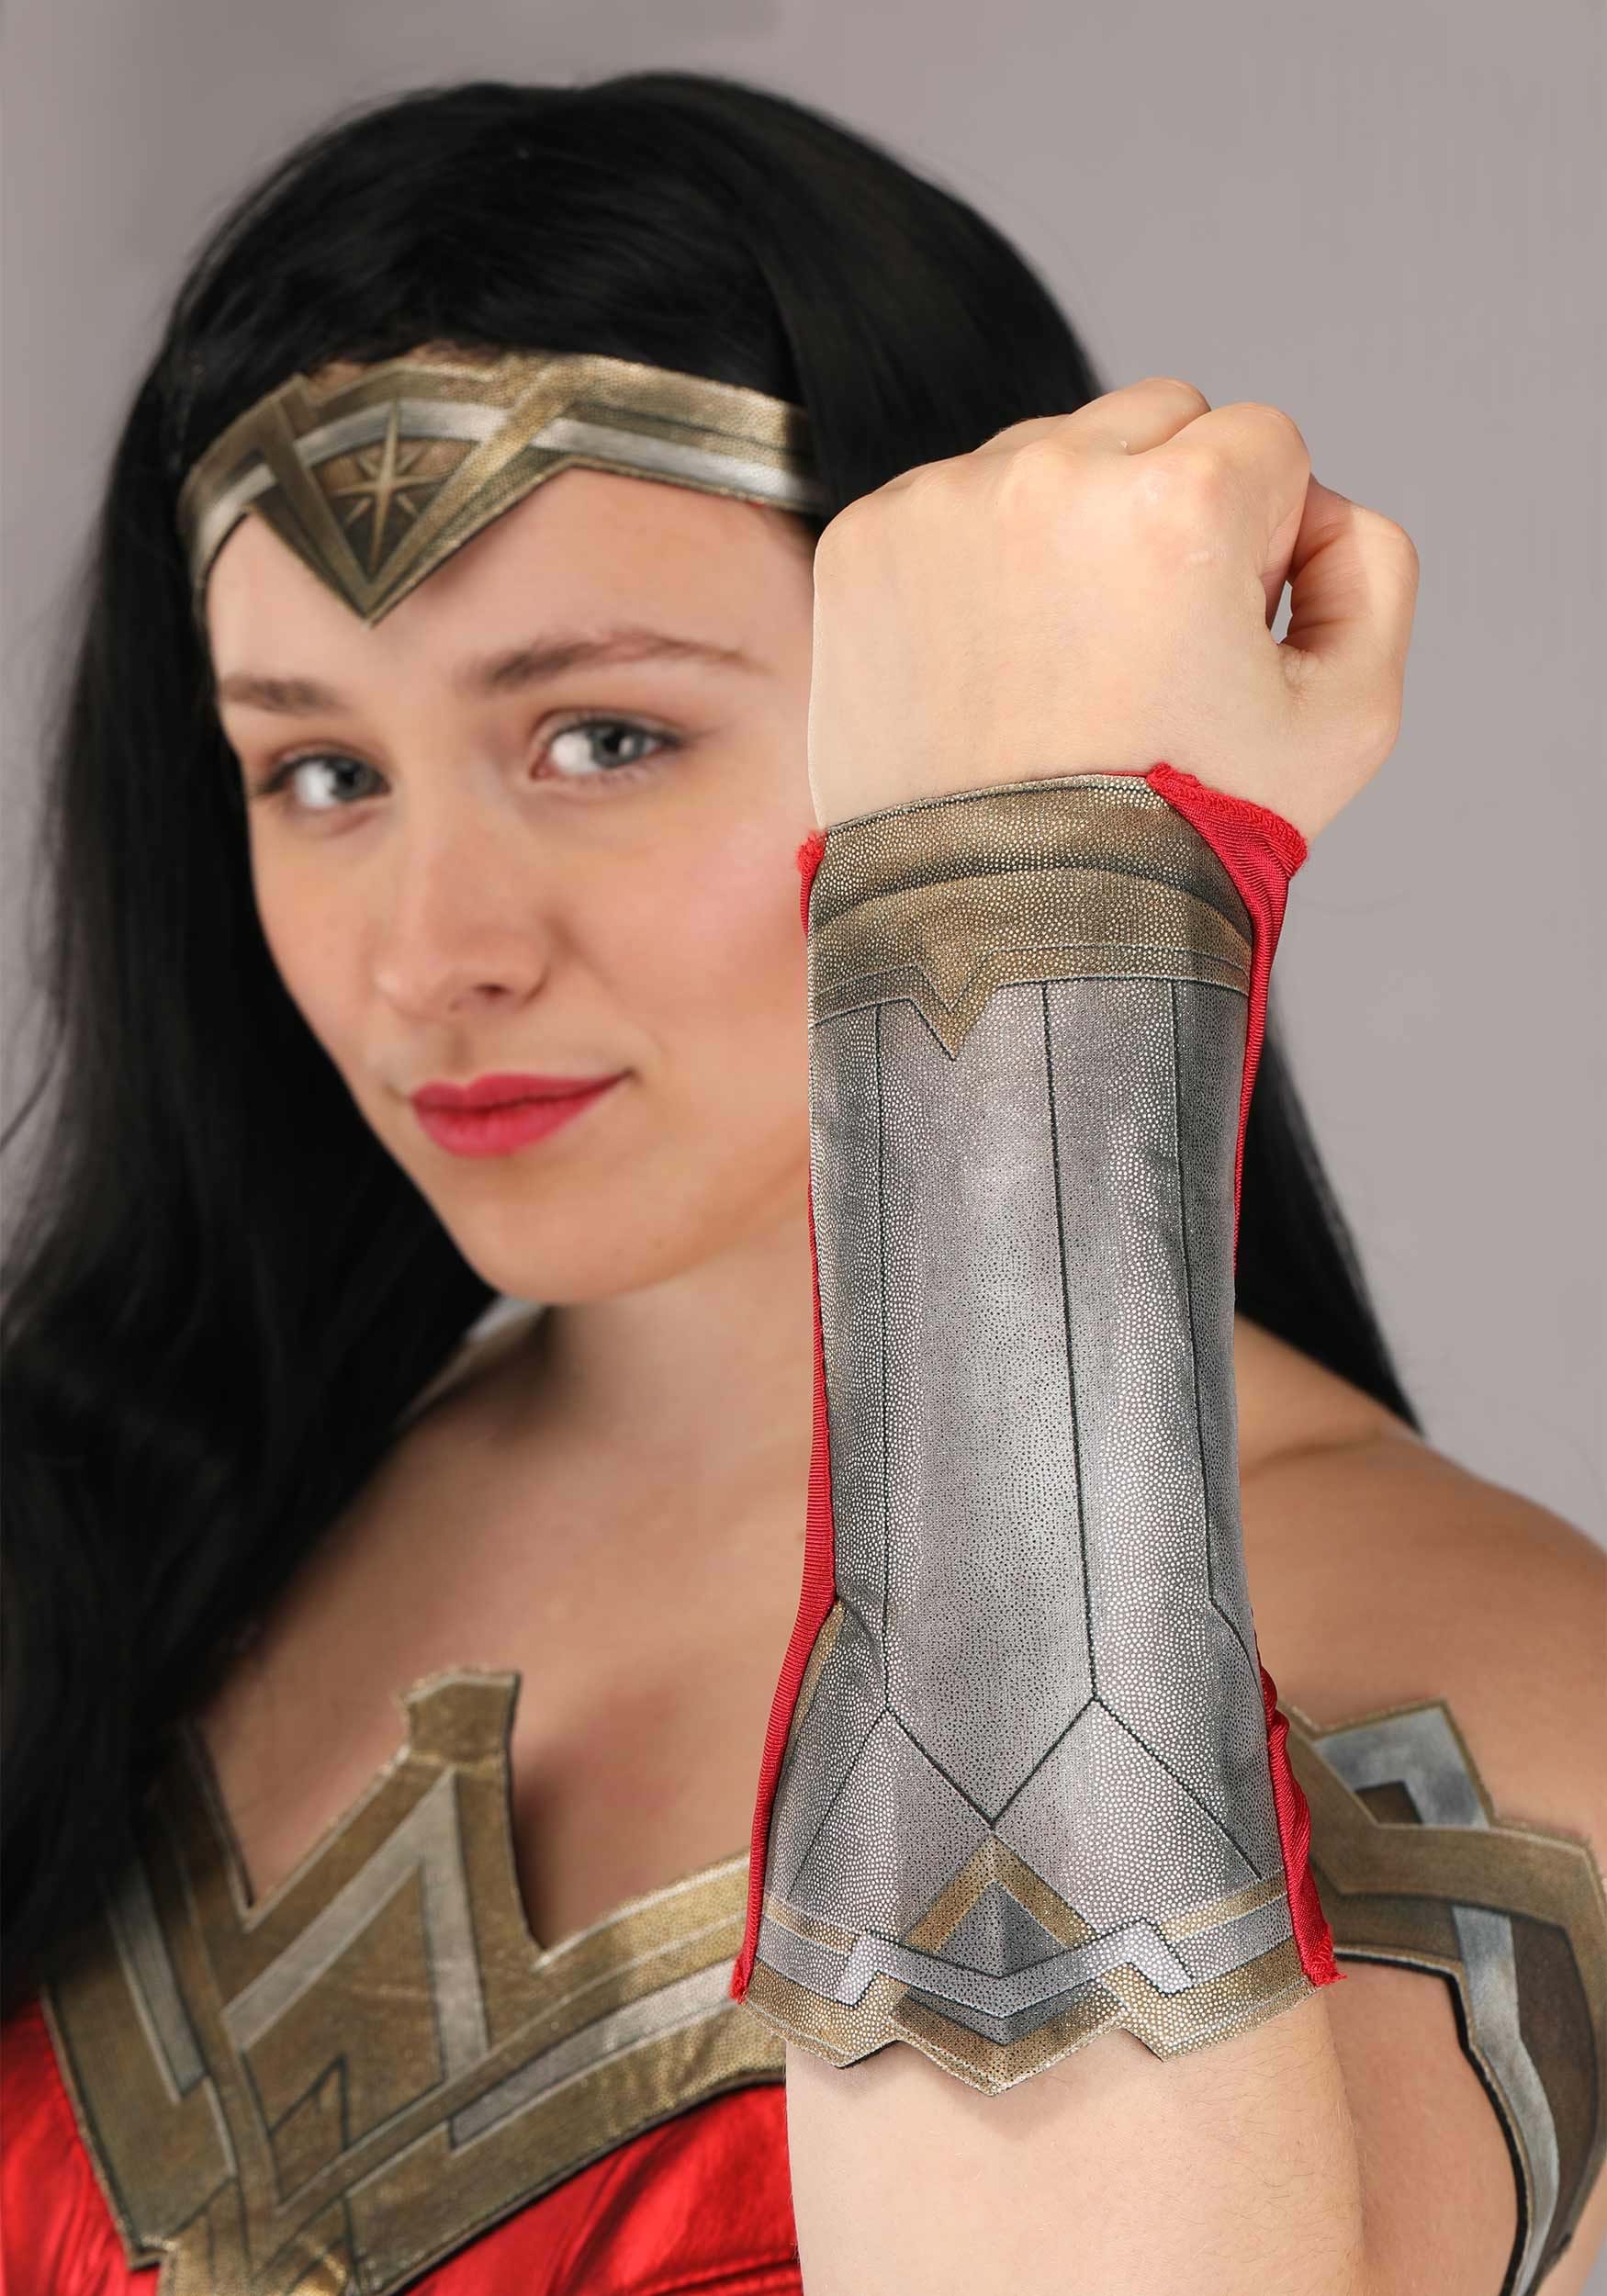 Women's DC Wonder Woman Deluxe Costume